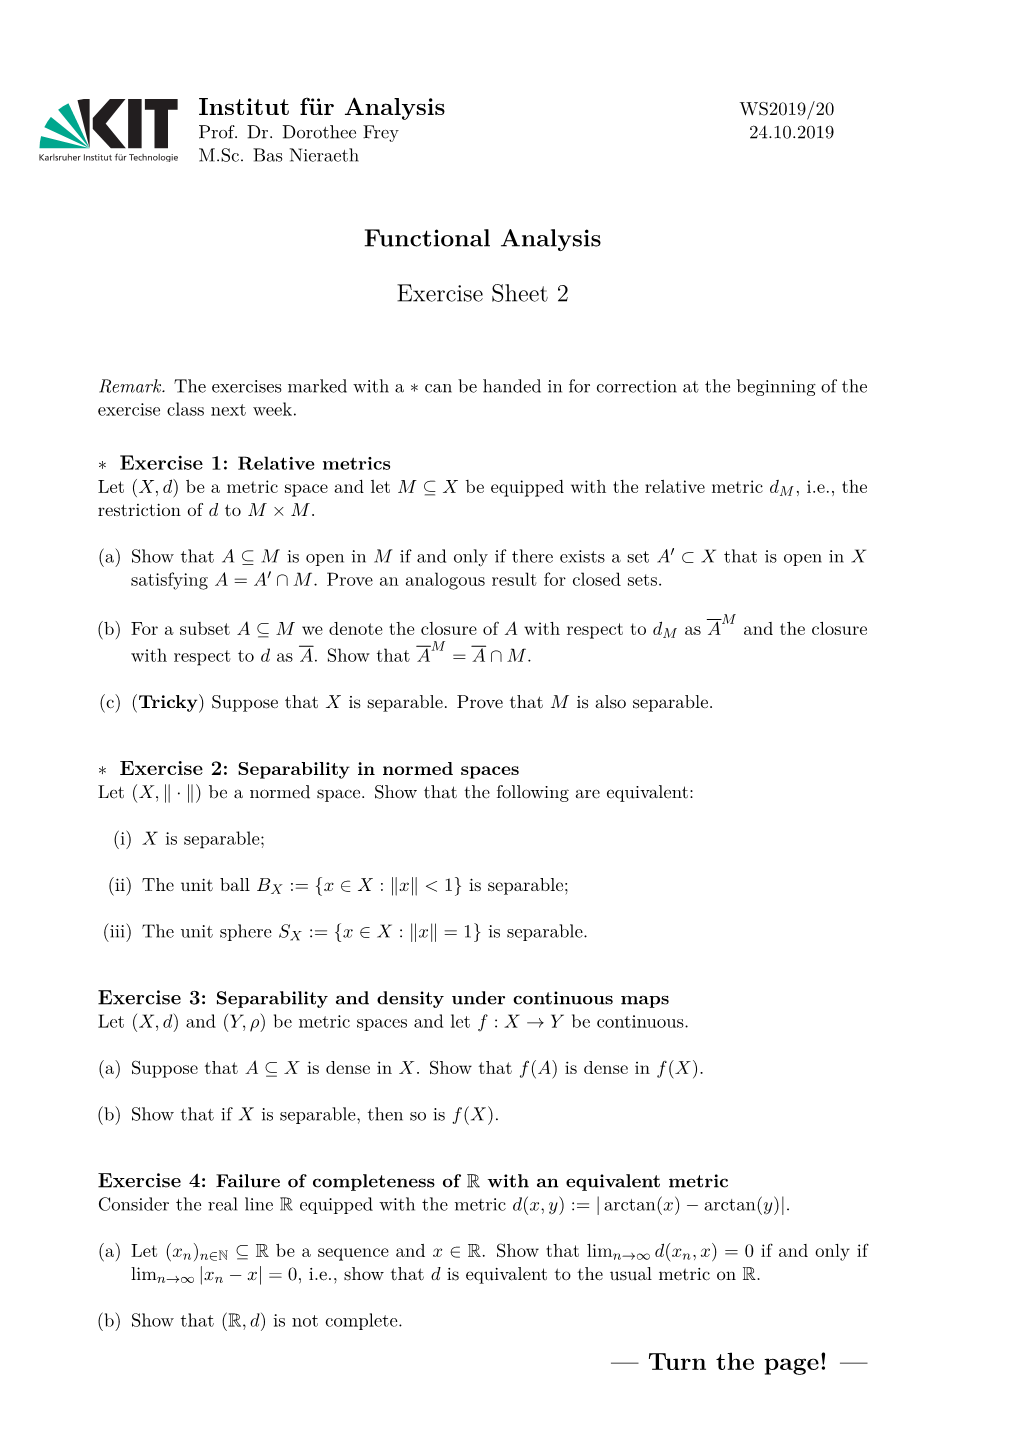 Functional Analysis Exercise Sheet 2